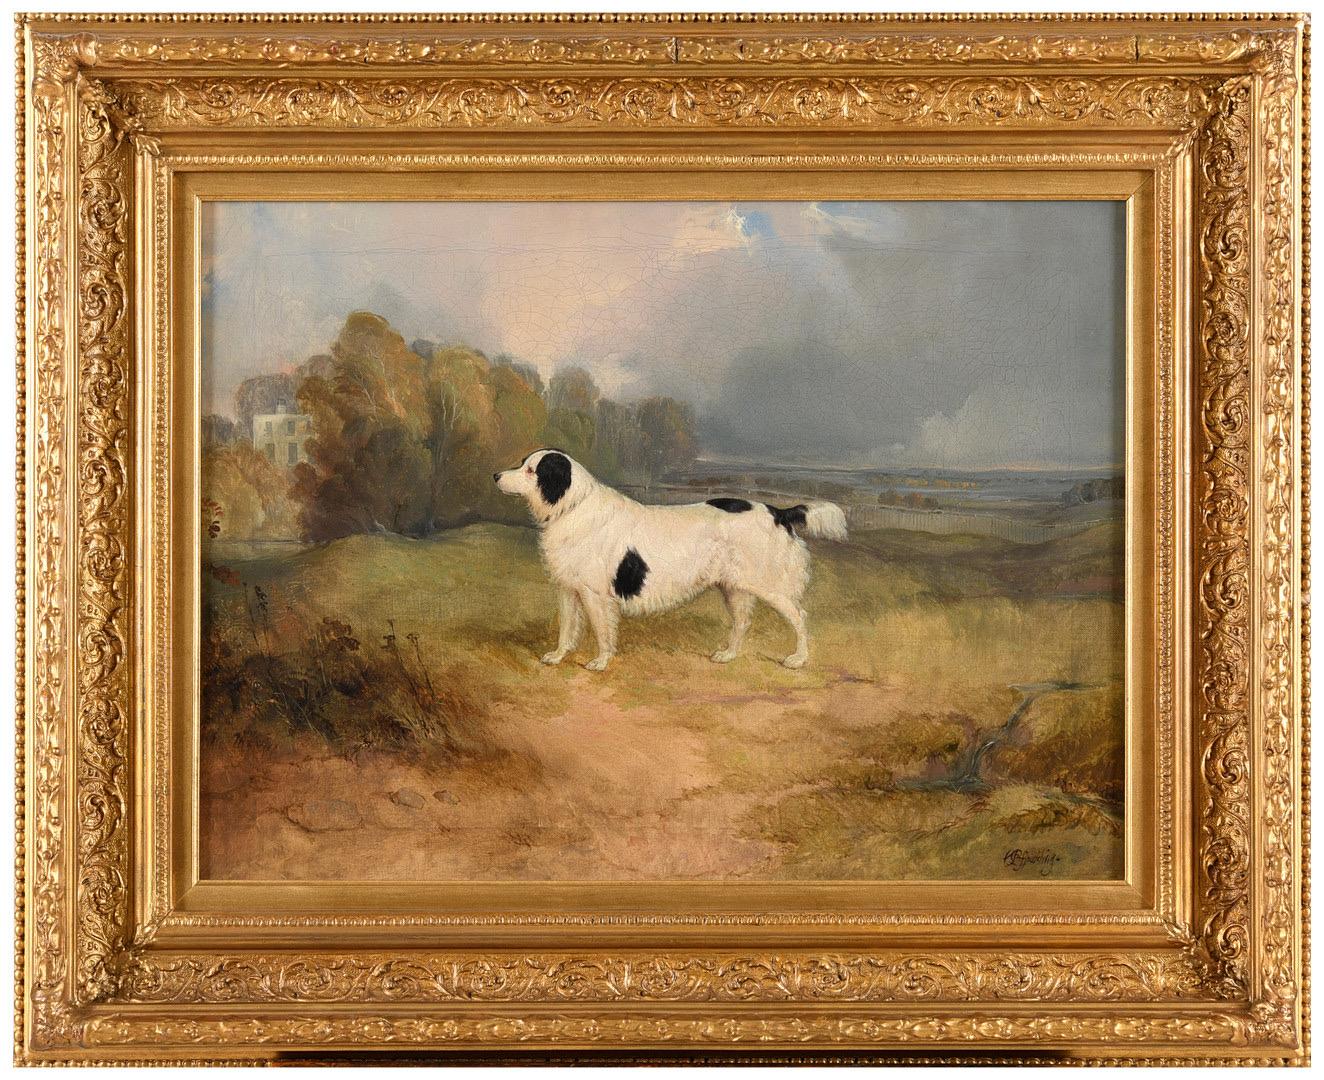 Animal Painting Charles Bilger Spalding - Portrait du 19e siècle d'un chien épagneul dans un paysage, une maison de campagne à l'arrière-plan